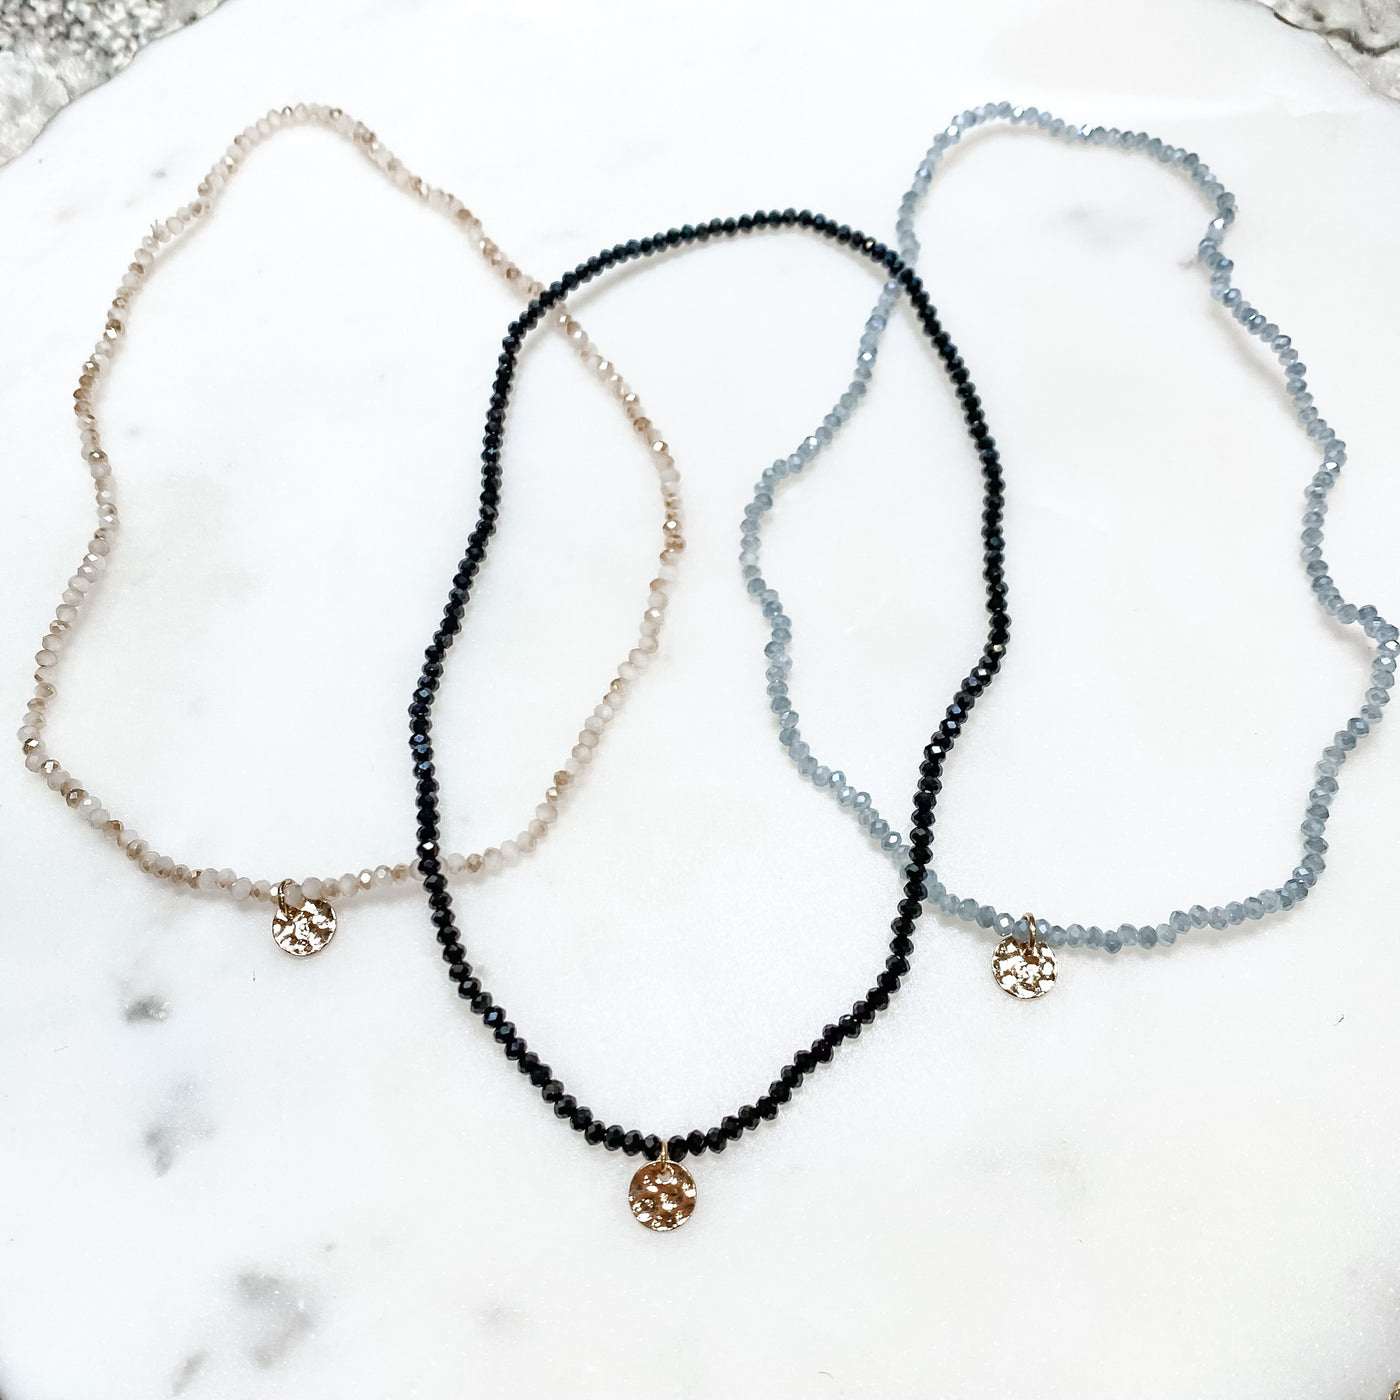 Glass Beads Bracelet/Necklace